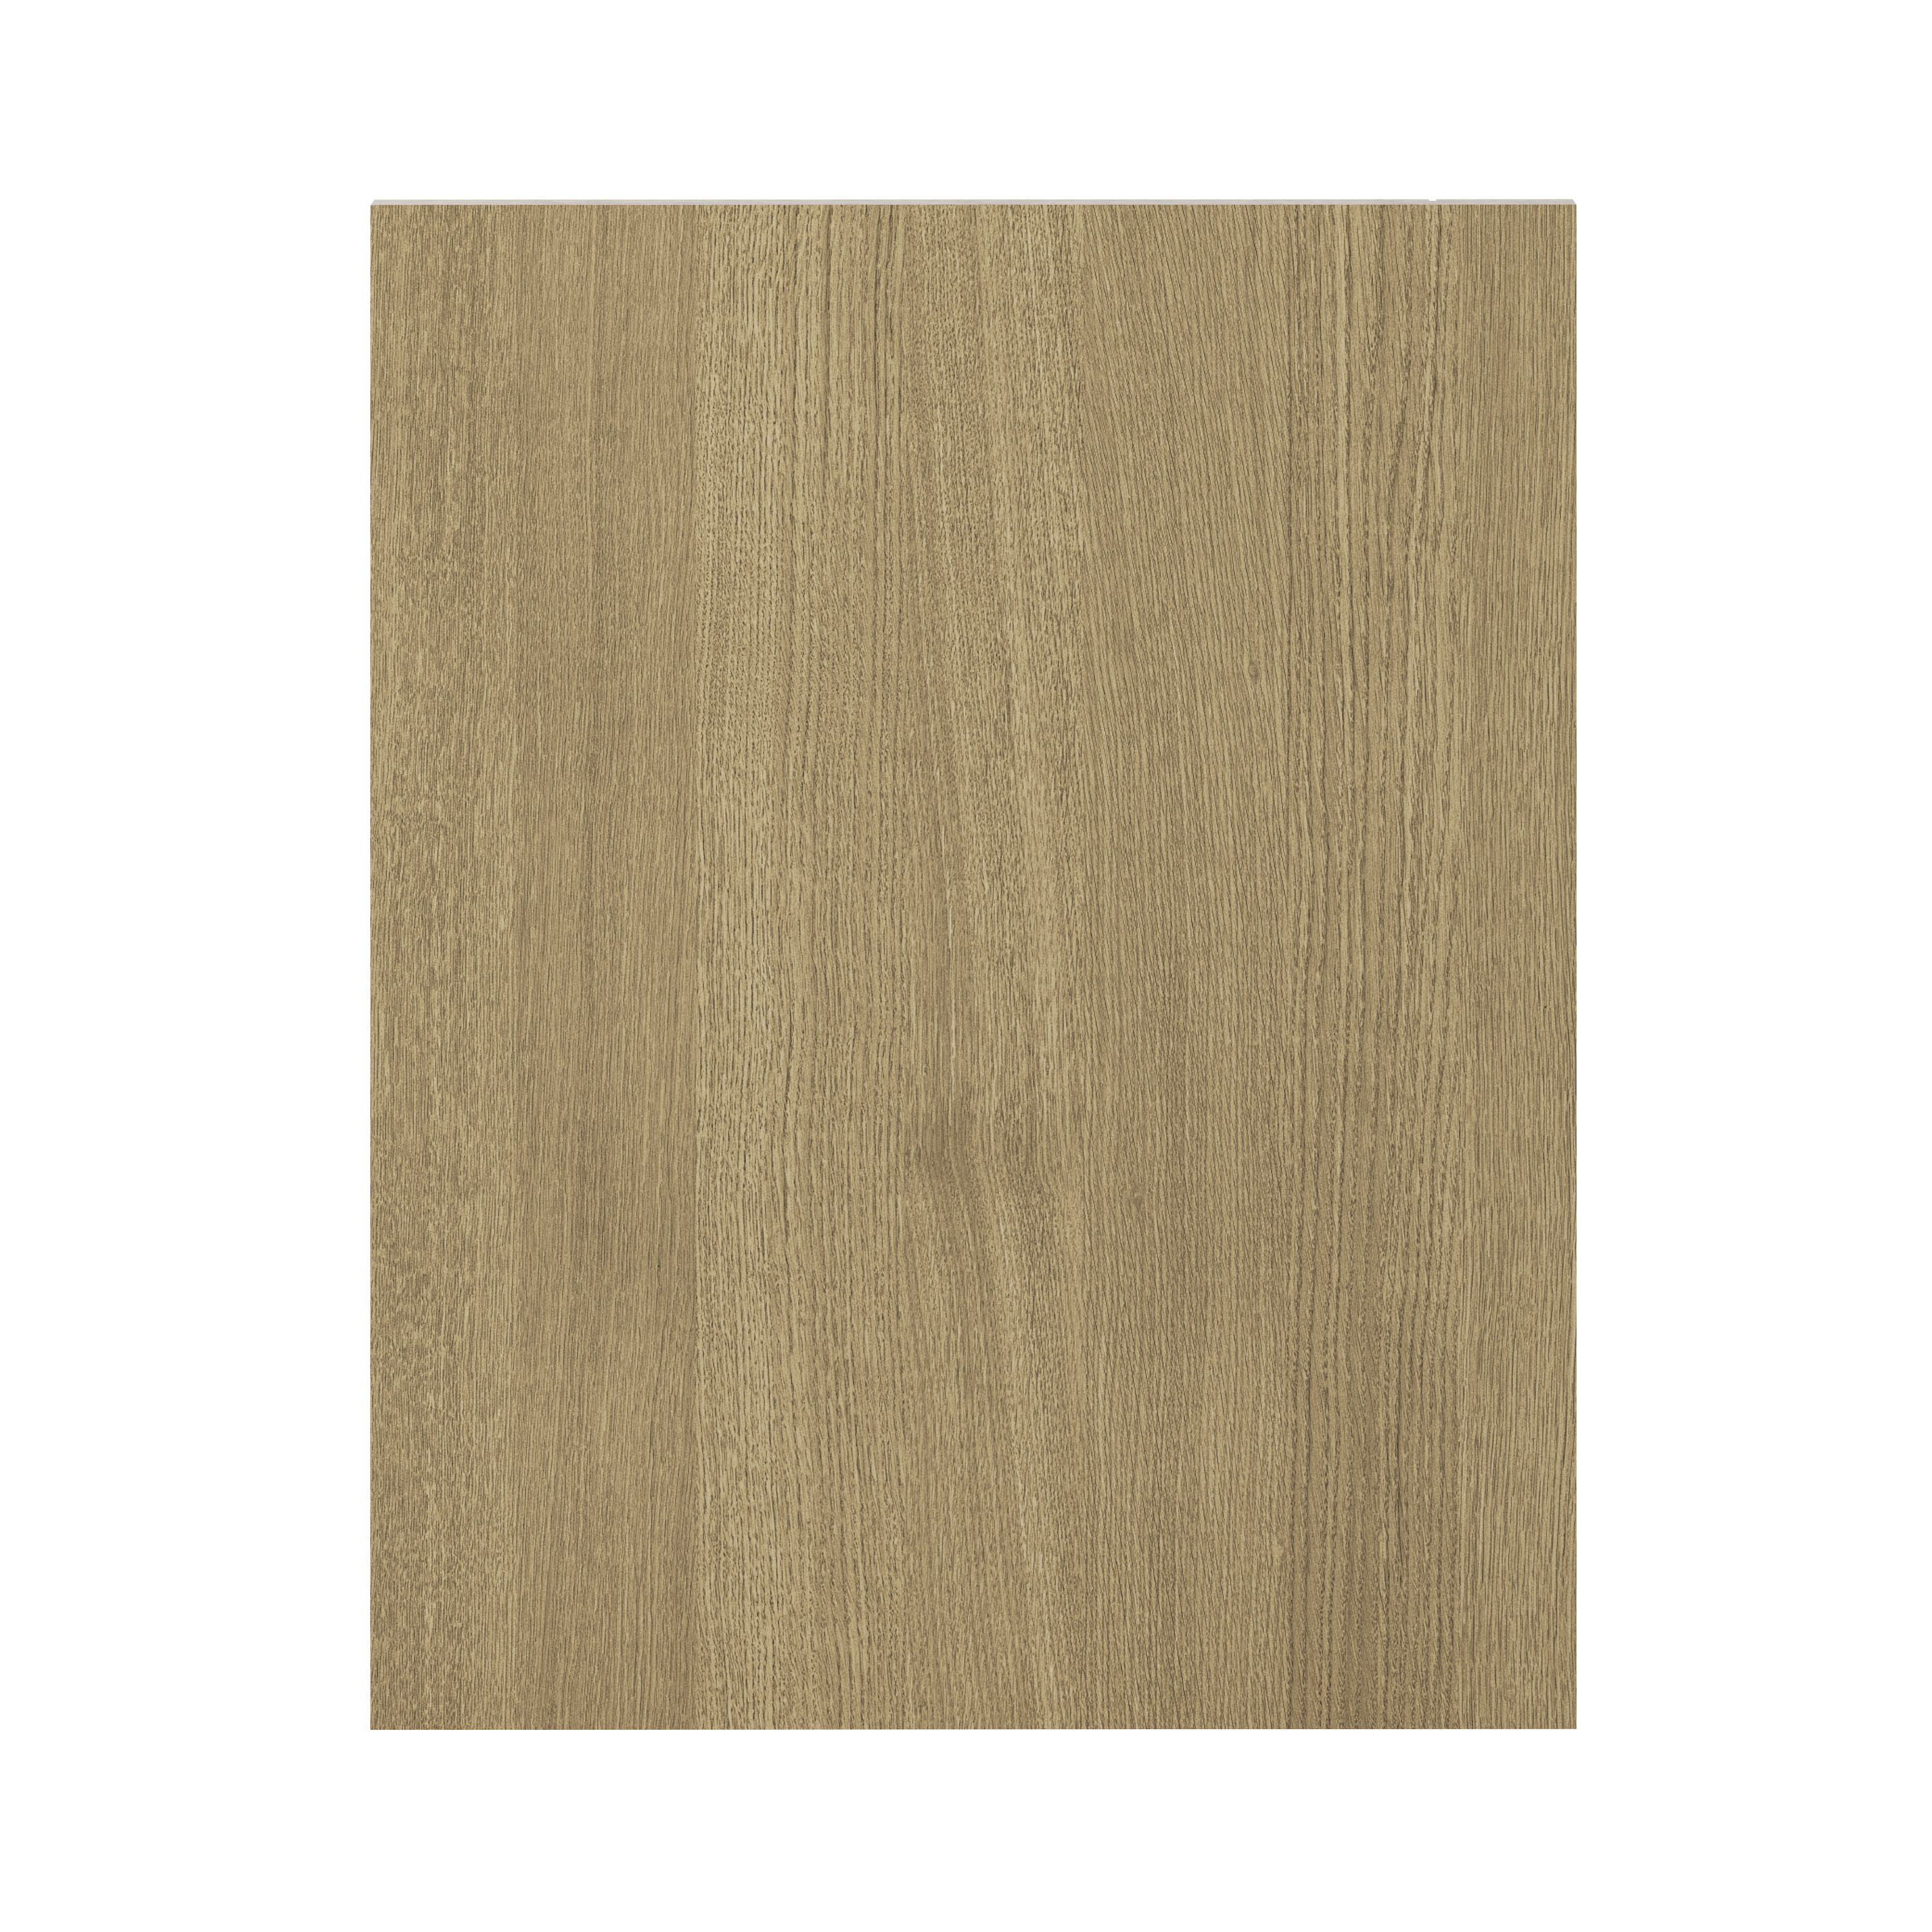 GoodHome Alpinia Oak effect shaker Standard End panel (H)720mm (W)570mm